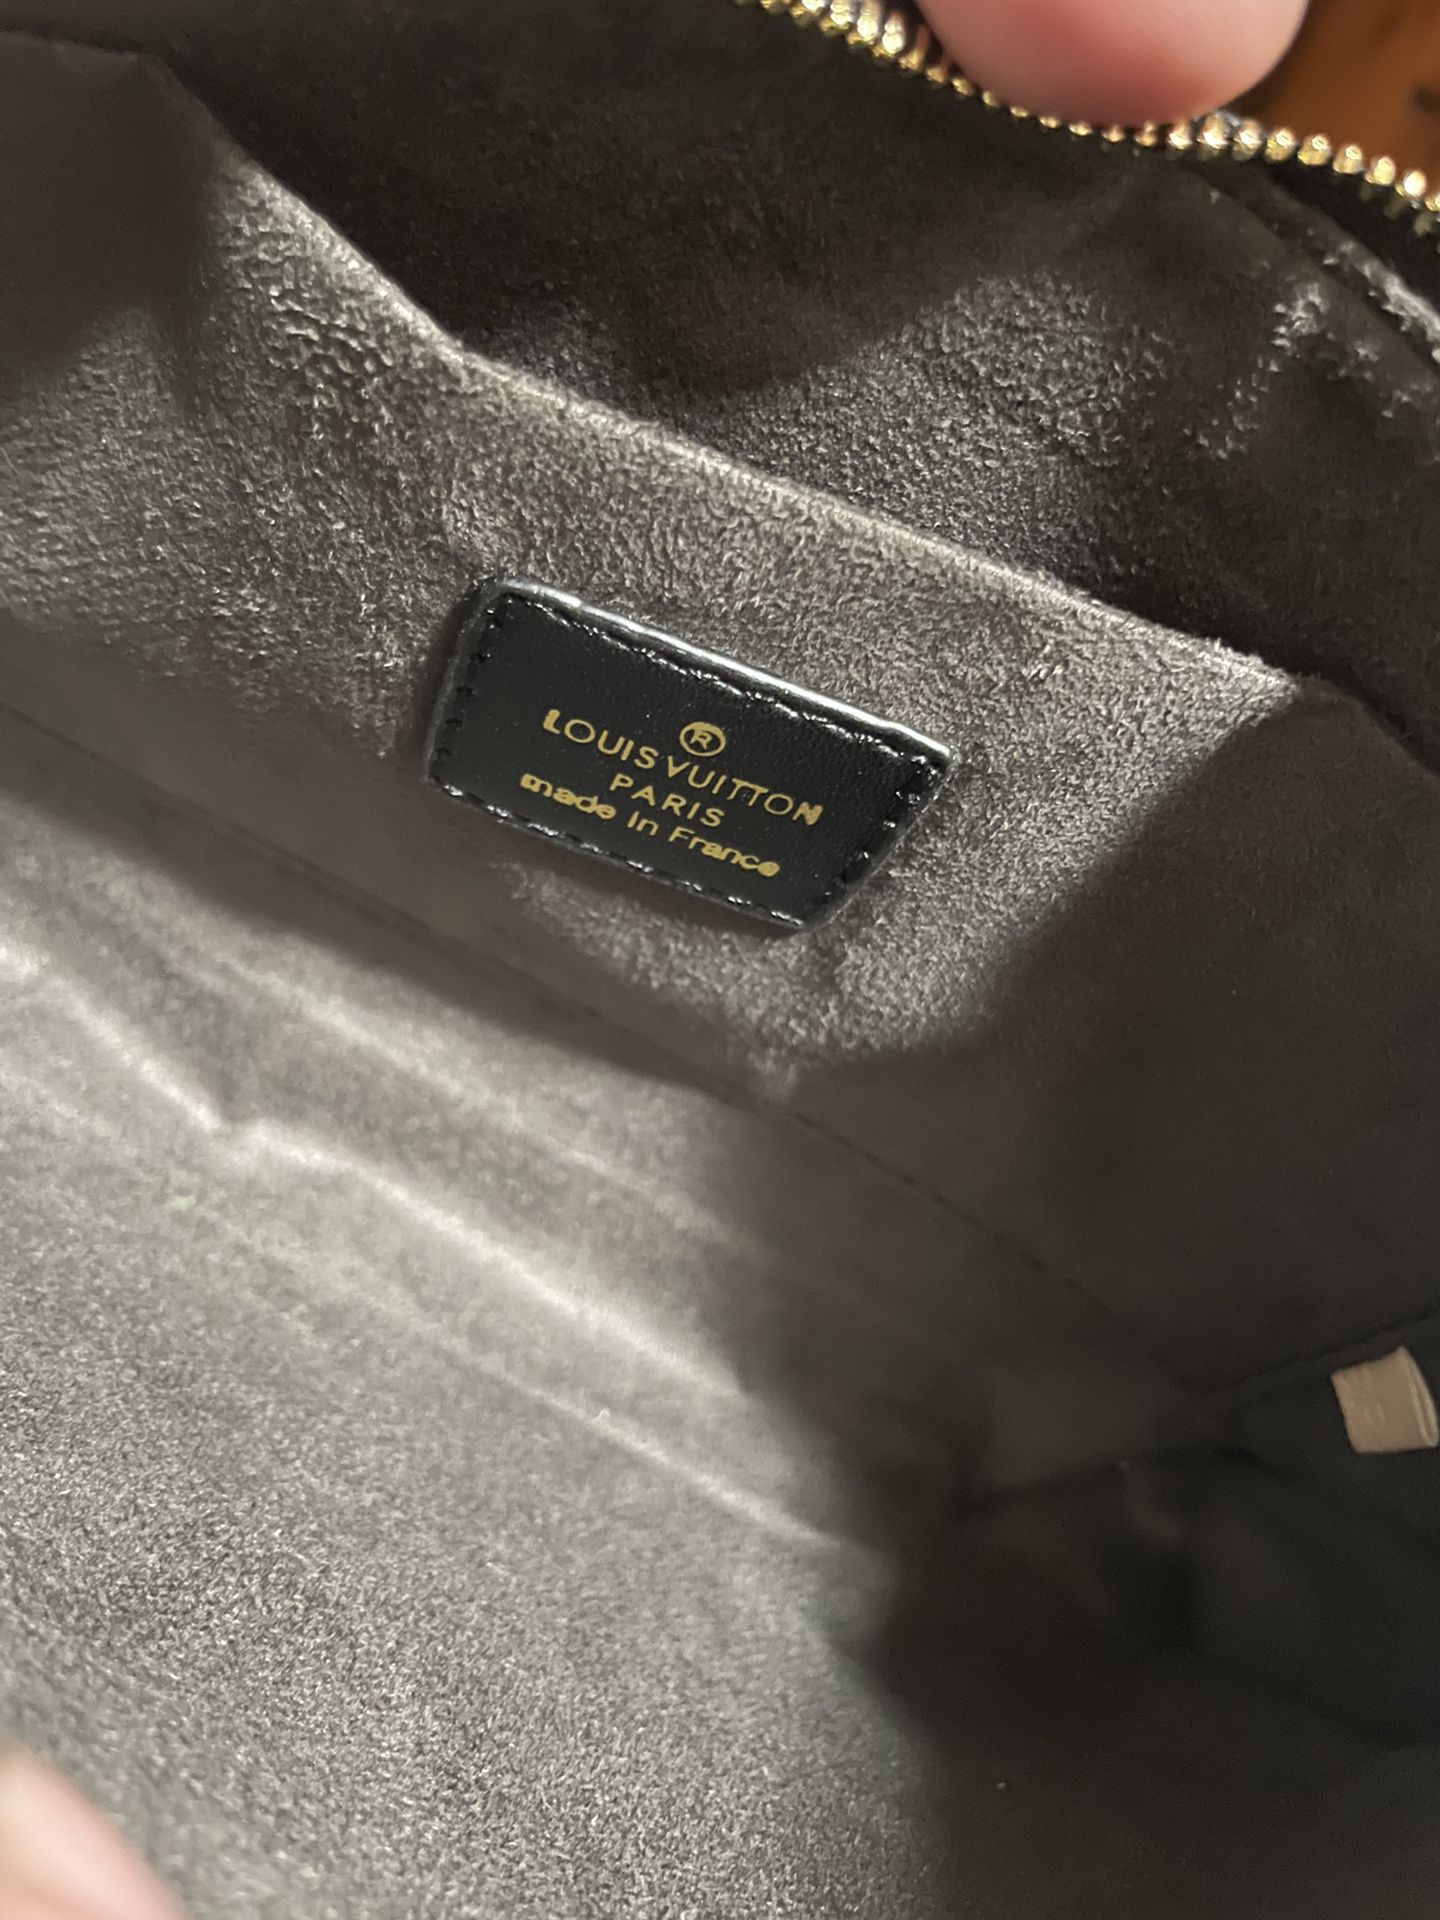 Louis Vuitton Empreinte Montaigne MM Black for Sale in Santa Ana, CA -  OfferUp